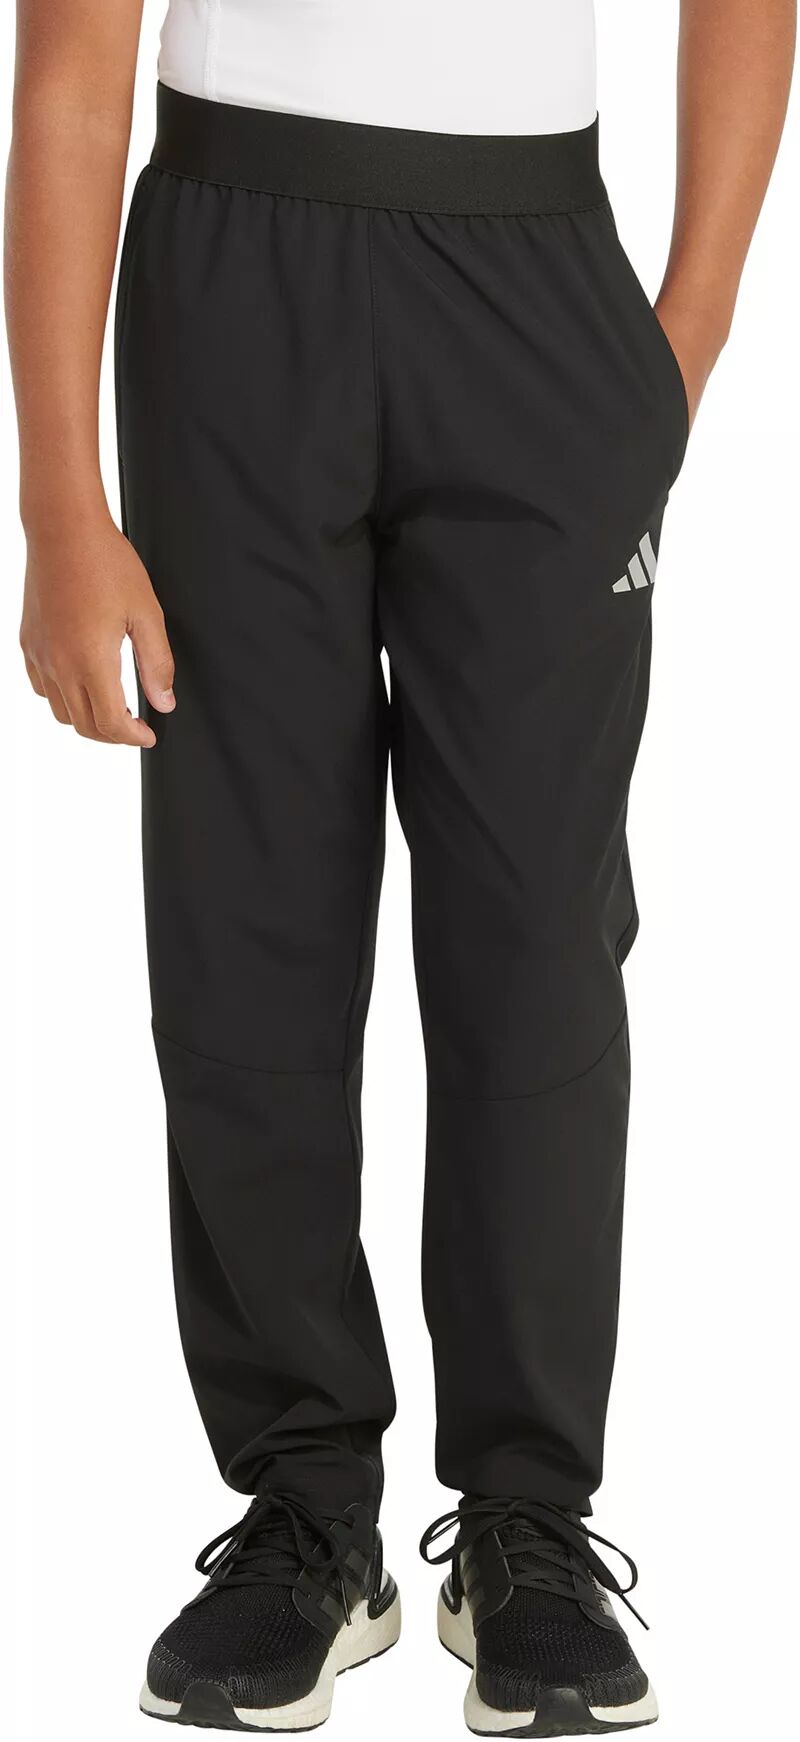 Спортивные брюки Adidas для мальчиков из эластичной ткани